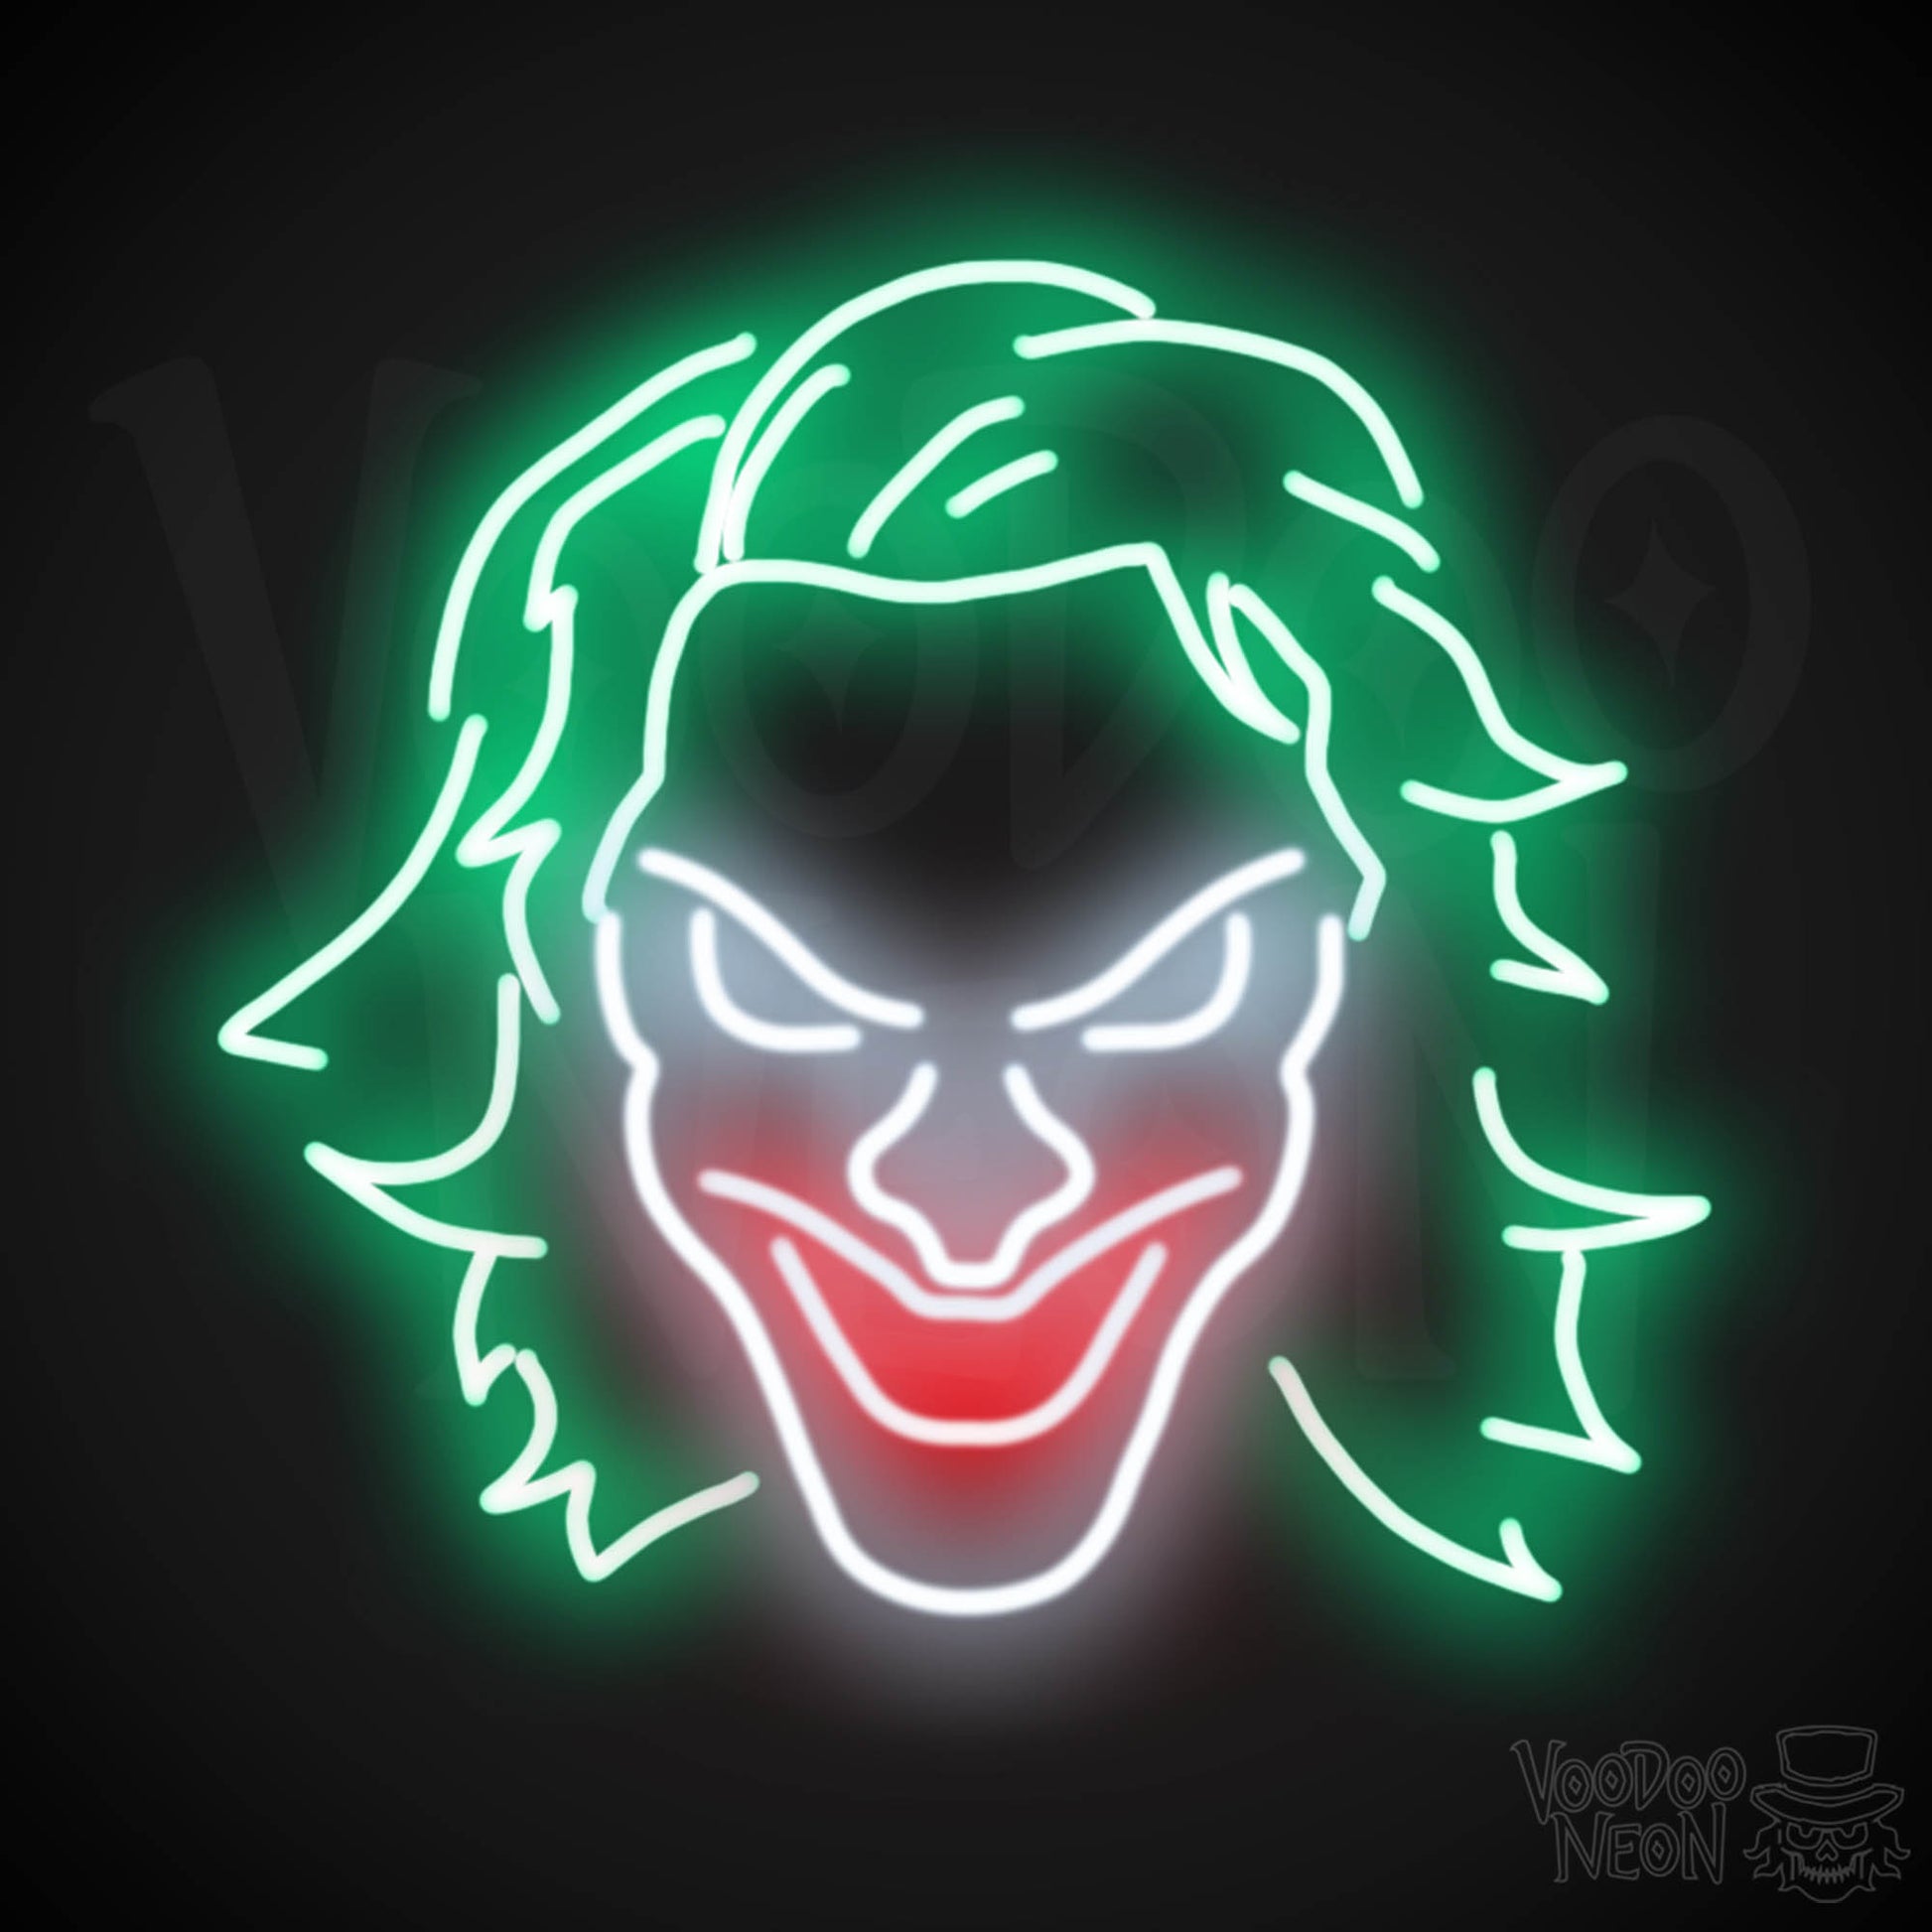 Joker Neon Sign - Neon Joker Sign - Joker LED Wall Art - Color Multi-Color